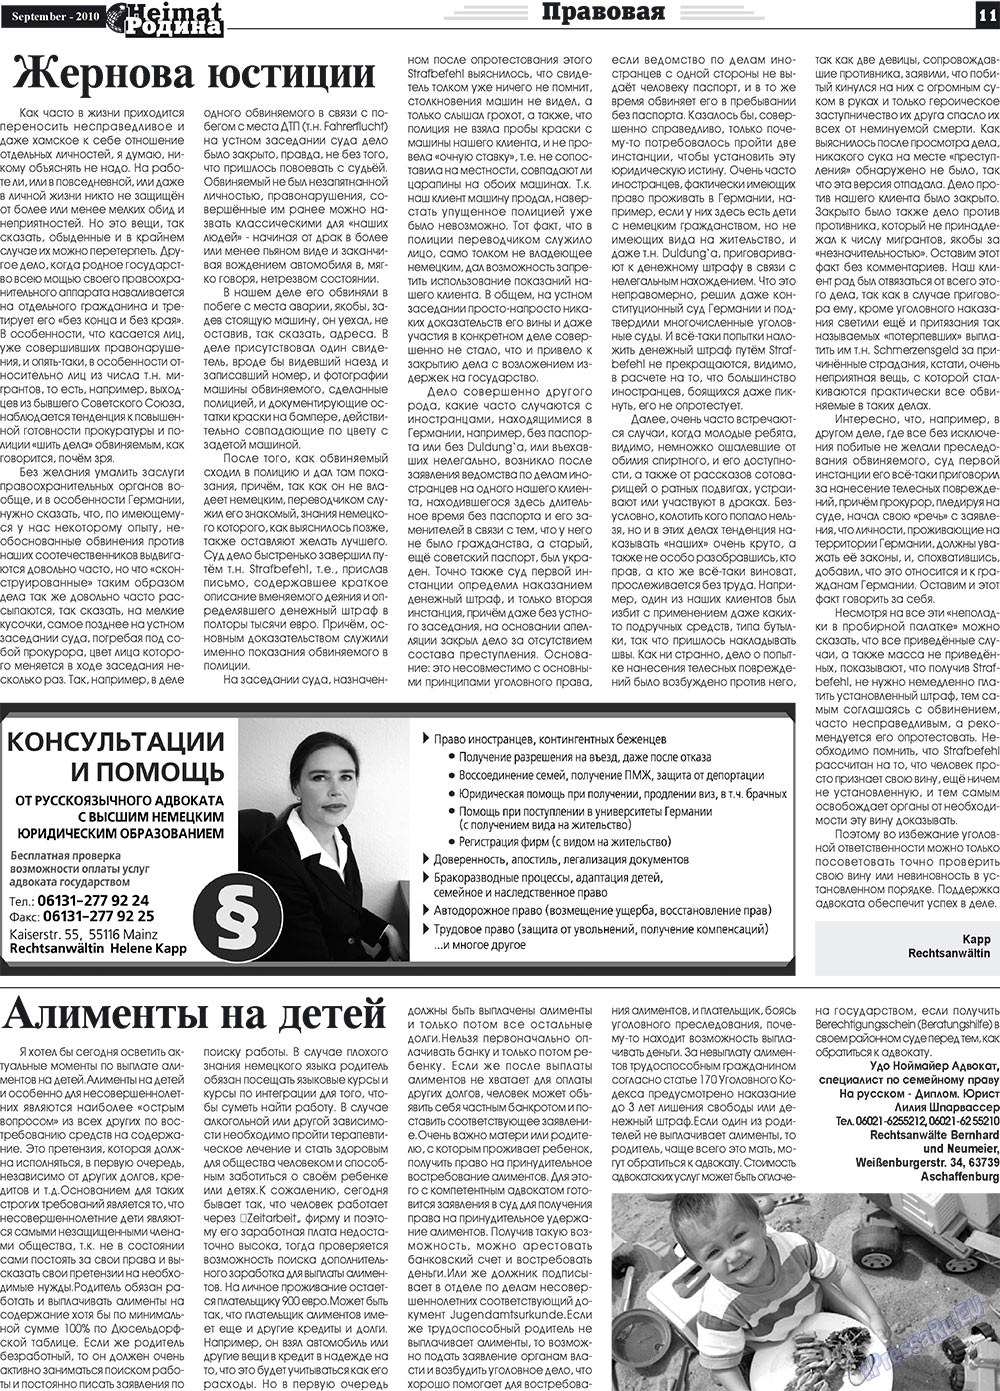 Heimat-Родина (газета). 2010 год, номер 9, стр. 11